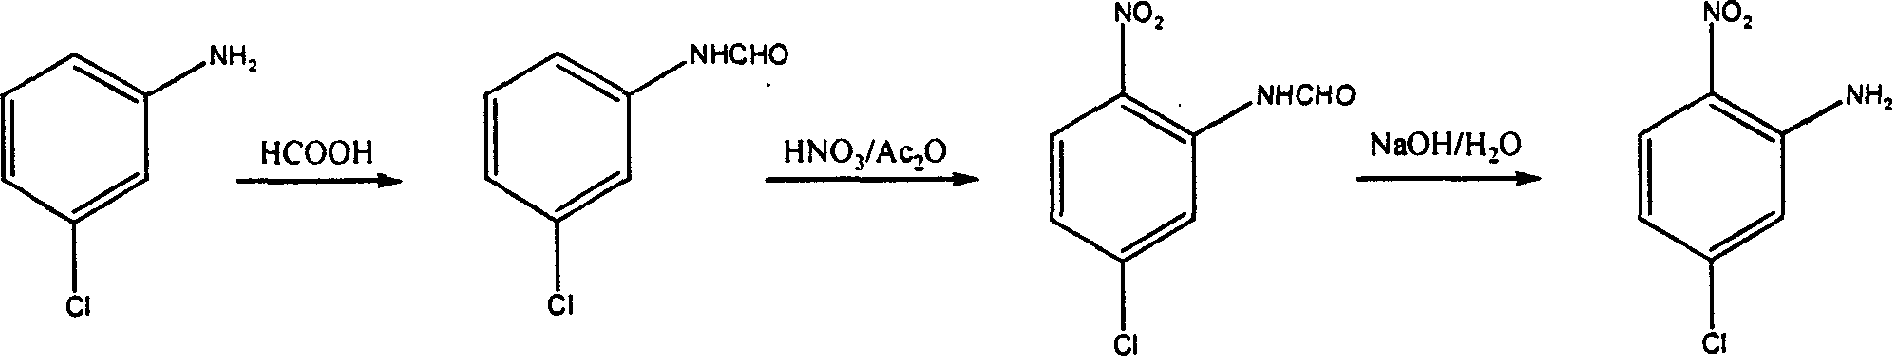 Chemical synthesizing method for 5-chlorine-2-nitroaniline